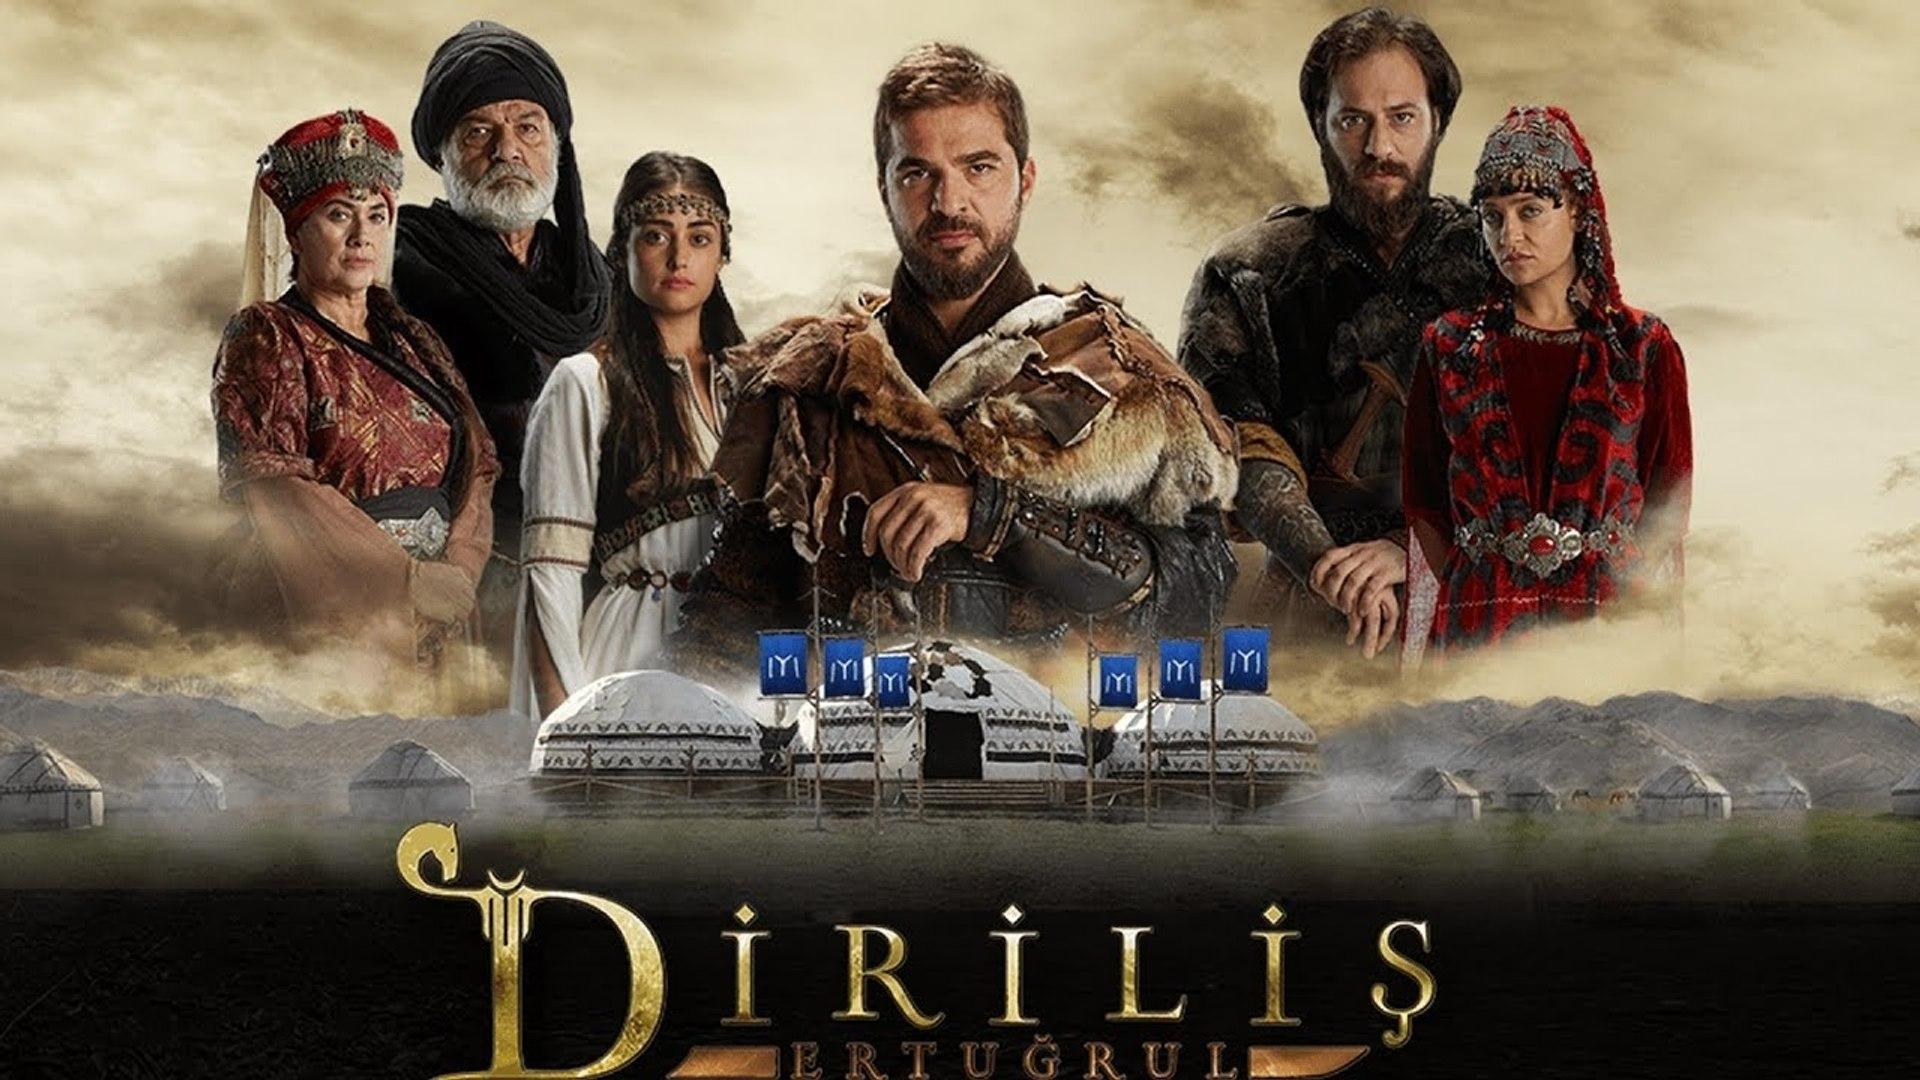 Dirilis Ertugrul The Best Turkish Series Resurrection The KAYIs